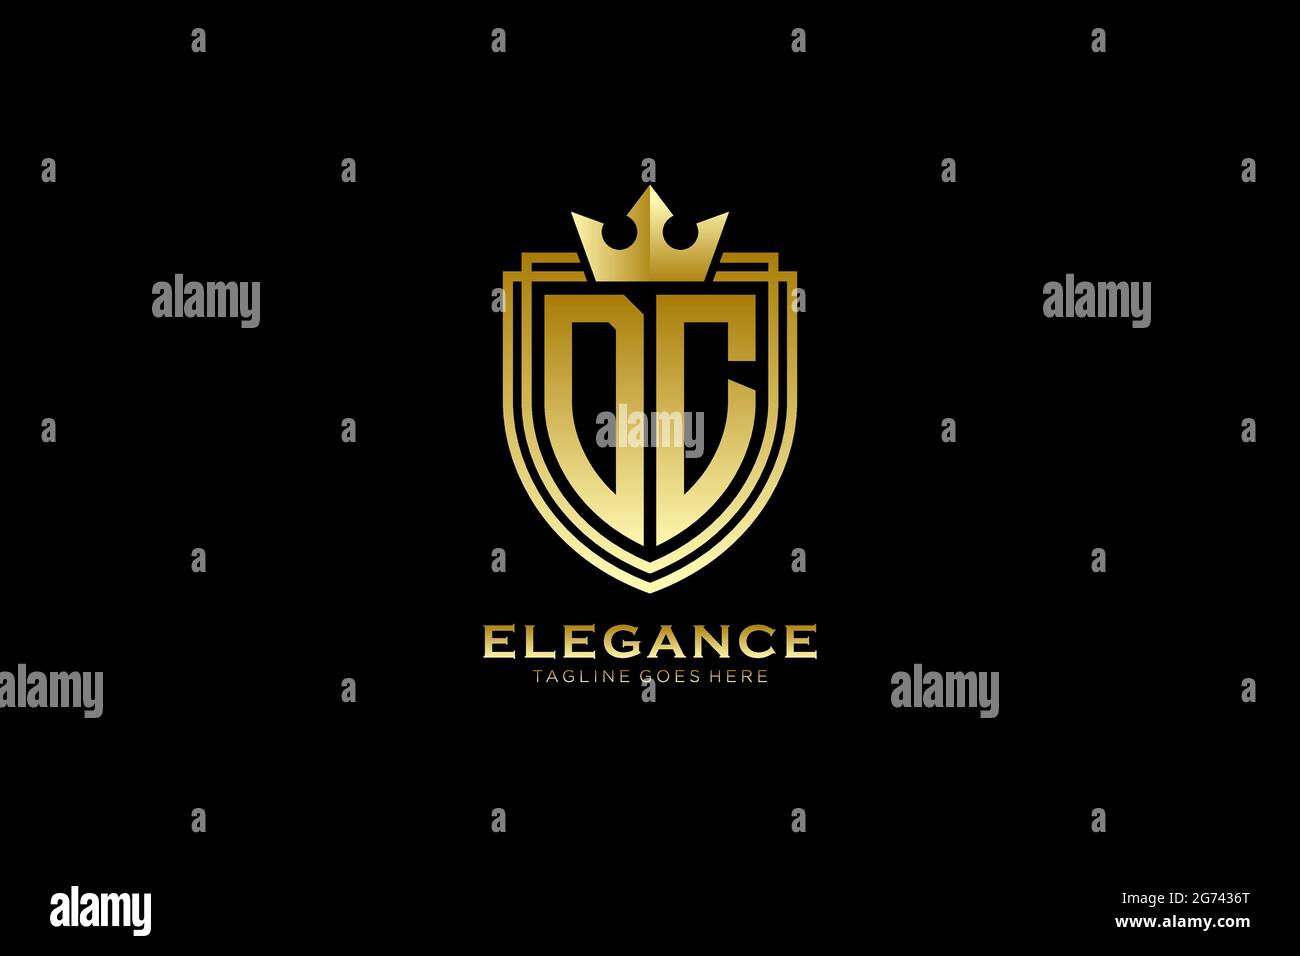 DC Elegantes Luxus-Monogramm-Logo oder Badge-Vorlage mit Rollen und königlicher Krone - perfekt für luxuriöse Branding-Projekte Stock Vektor